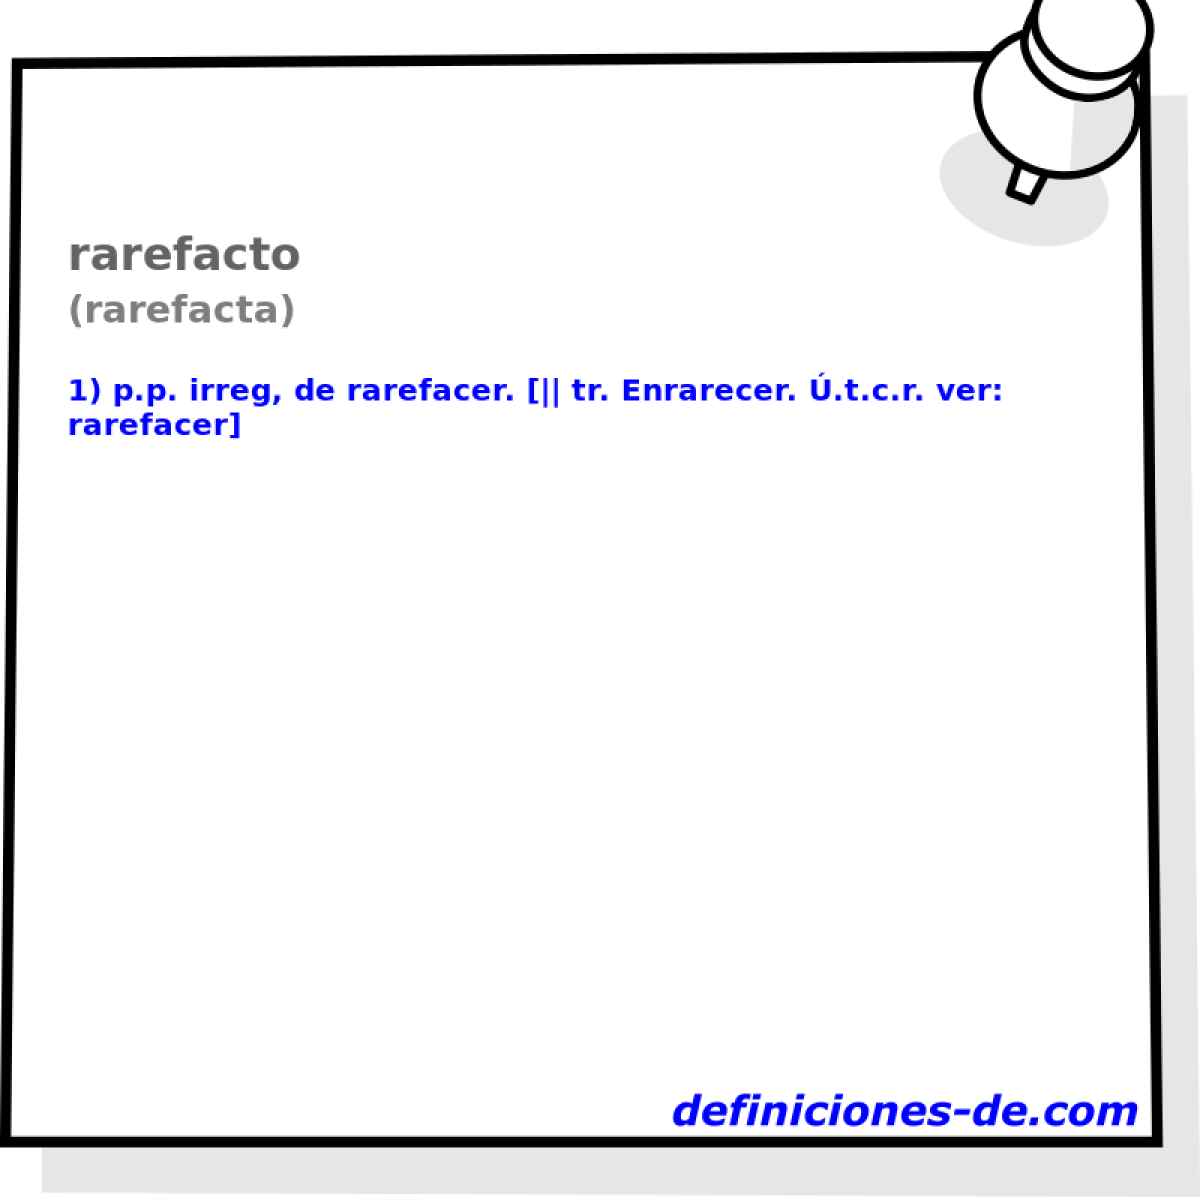 rarefacto (rarefacta)